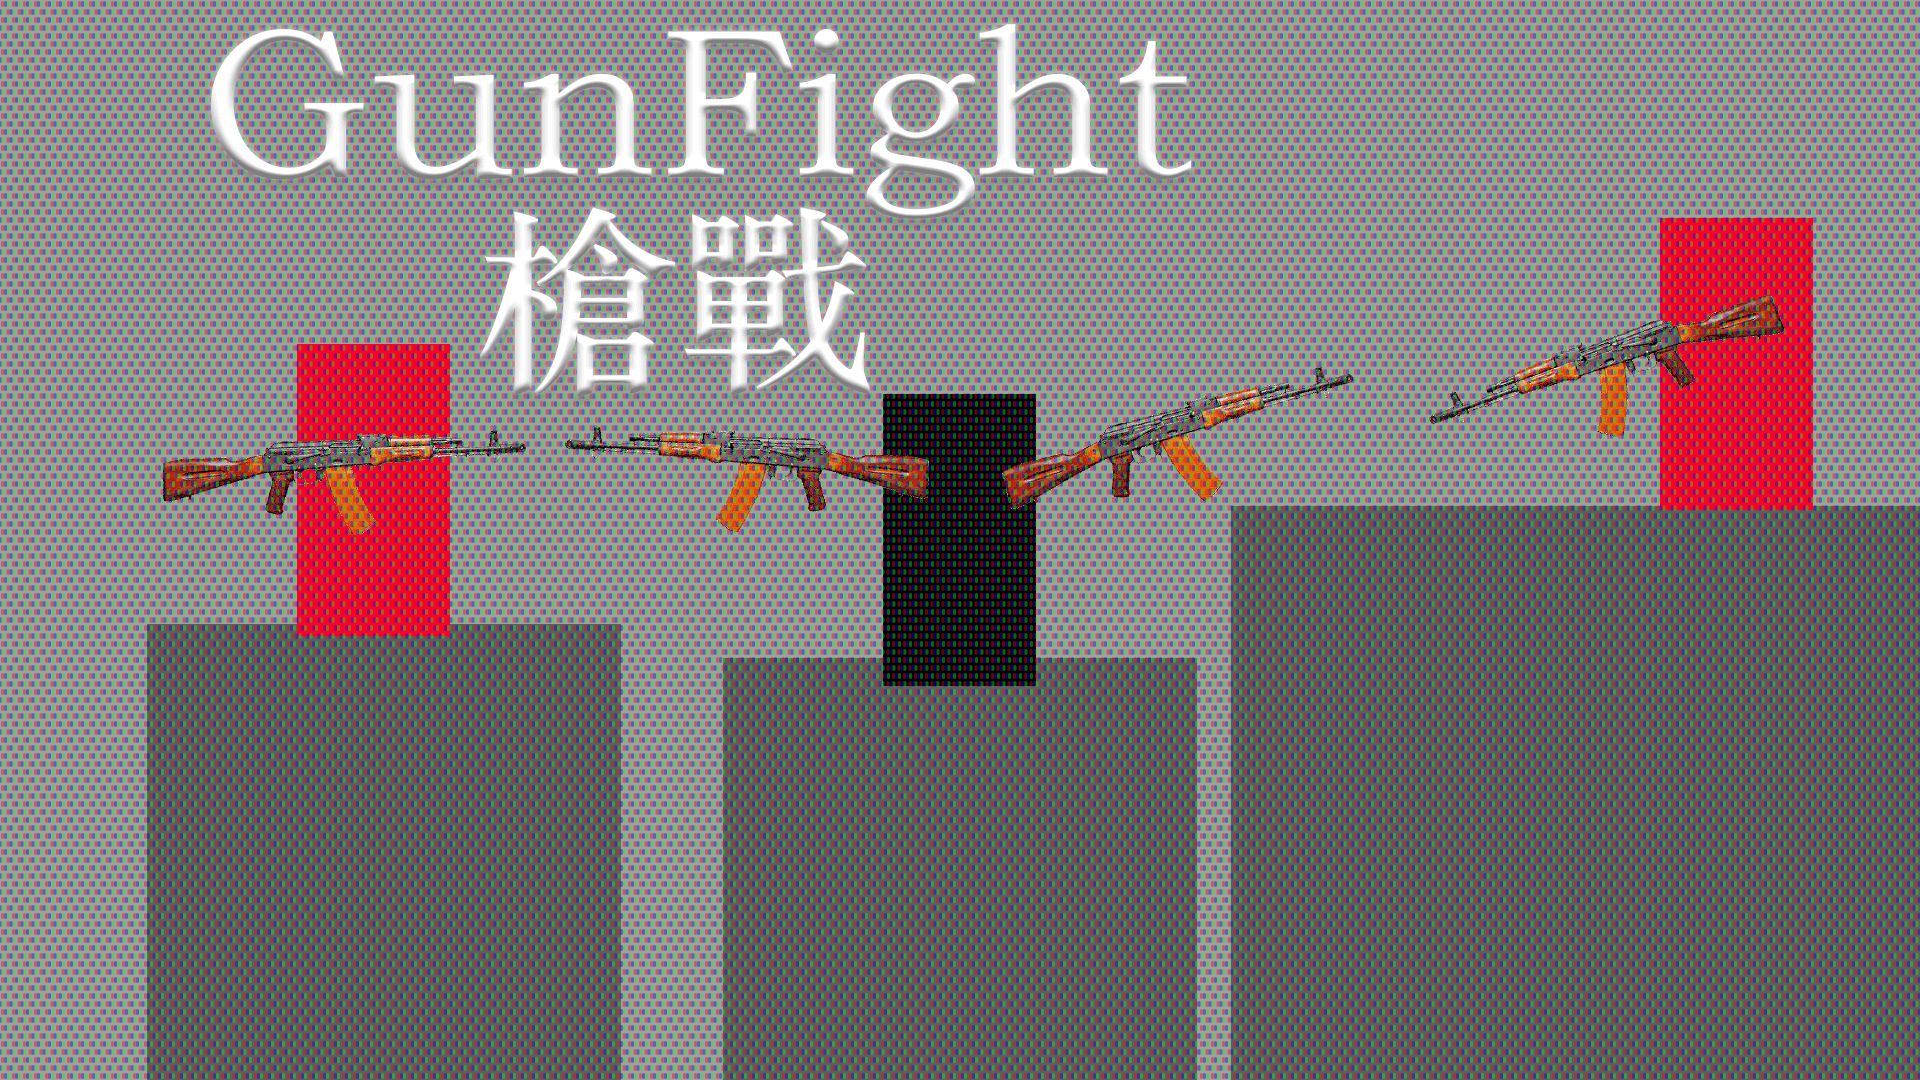 GunFight Prototype槍戰原型